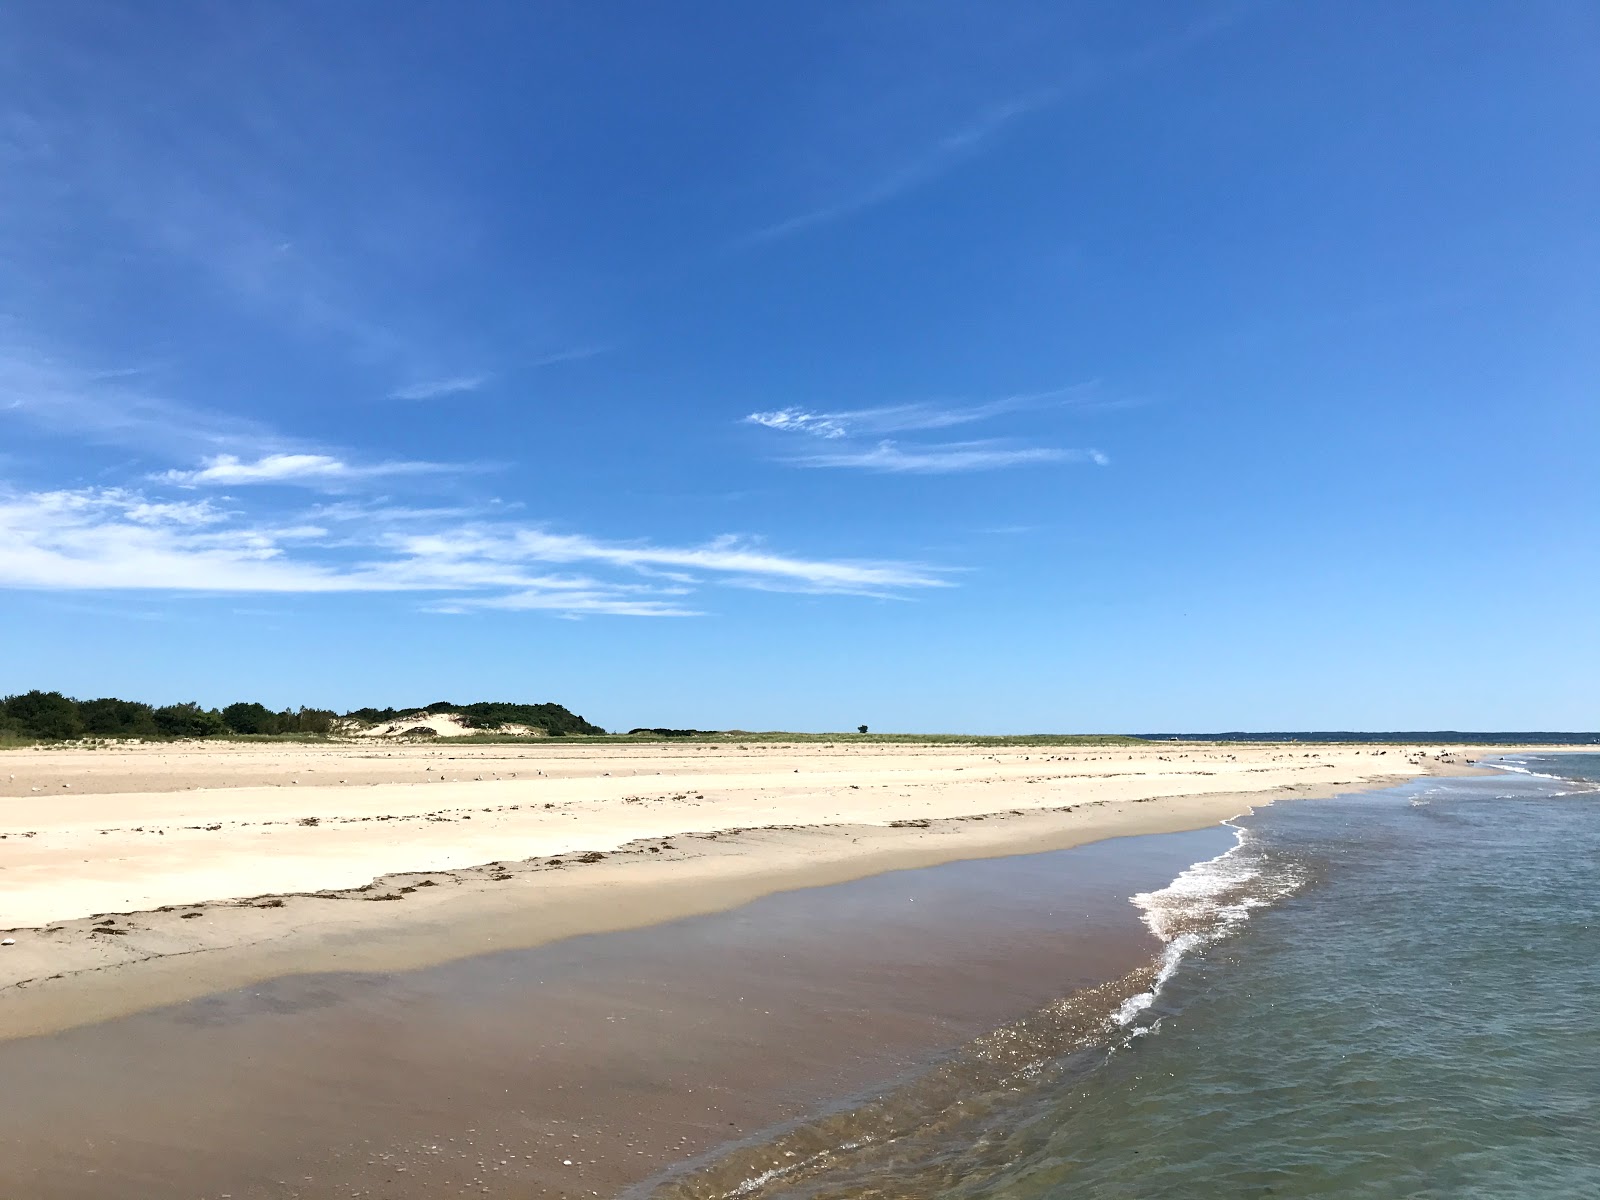 Sandy Point beach'in fotoğrafı parlak kum yüzey ile